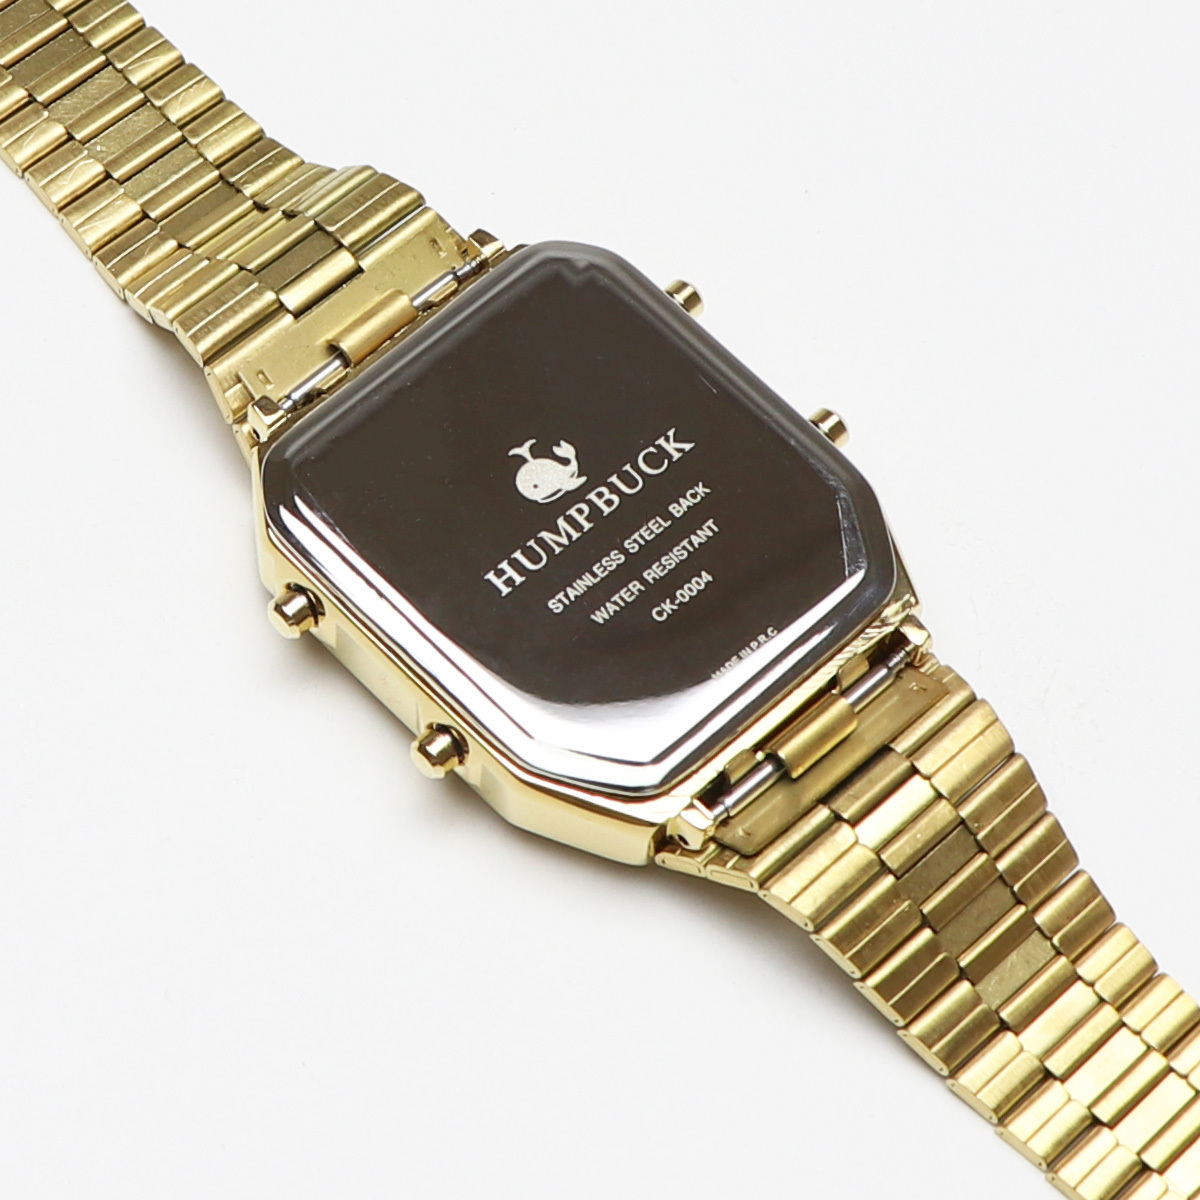 6ヶ月保証 アウトレット アナログ&デジタルテンプ5 ゴールドコクピット 温度計 バックライト 腕時計 ANADIGITEMP アナデジテンプタイプ_画像2